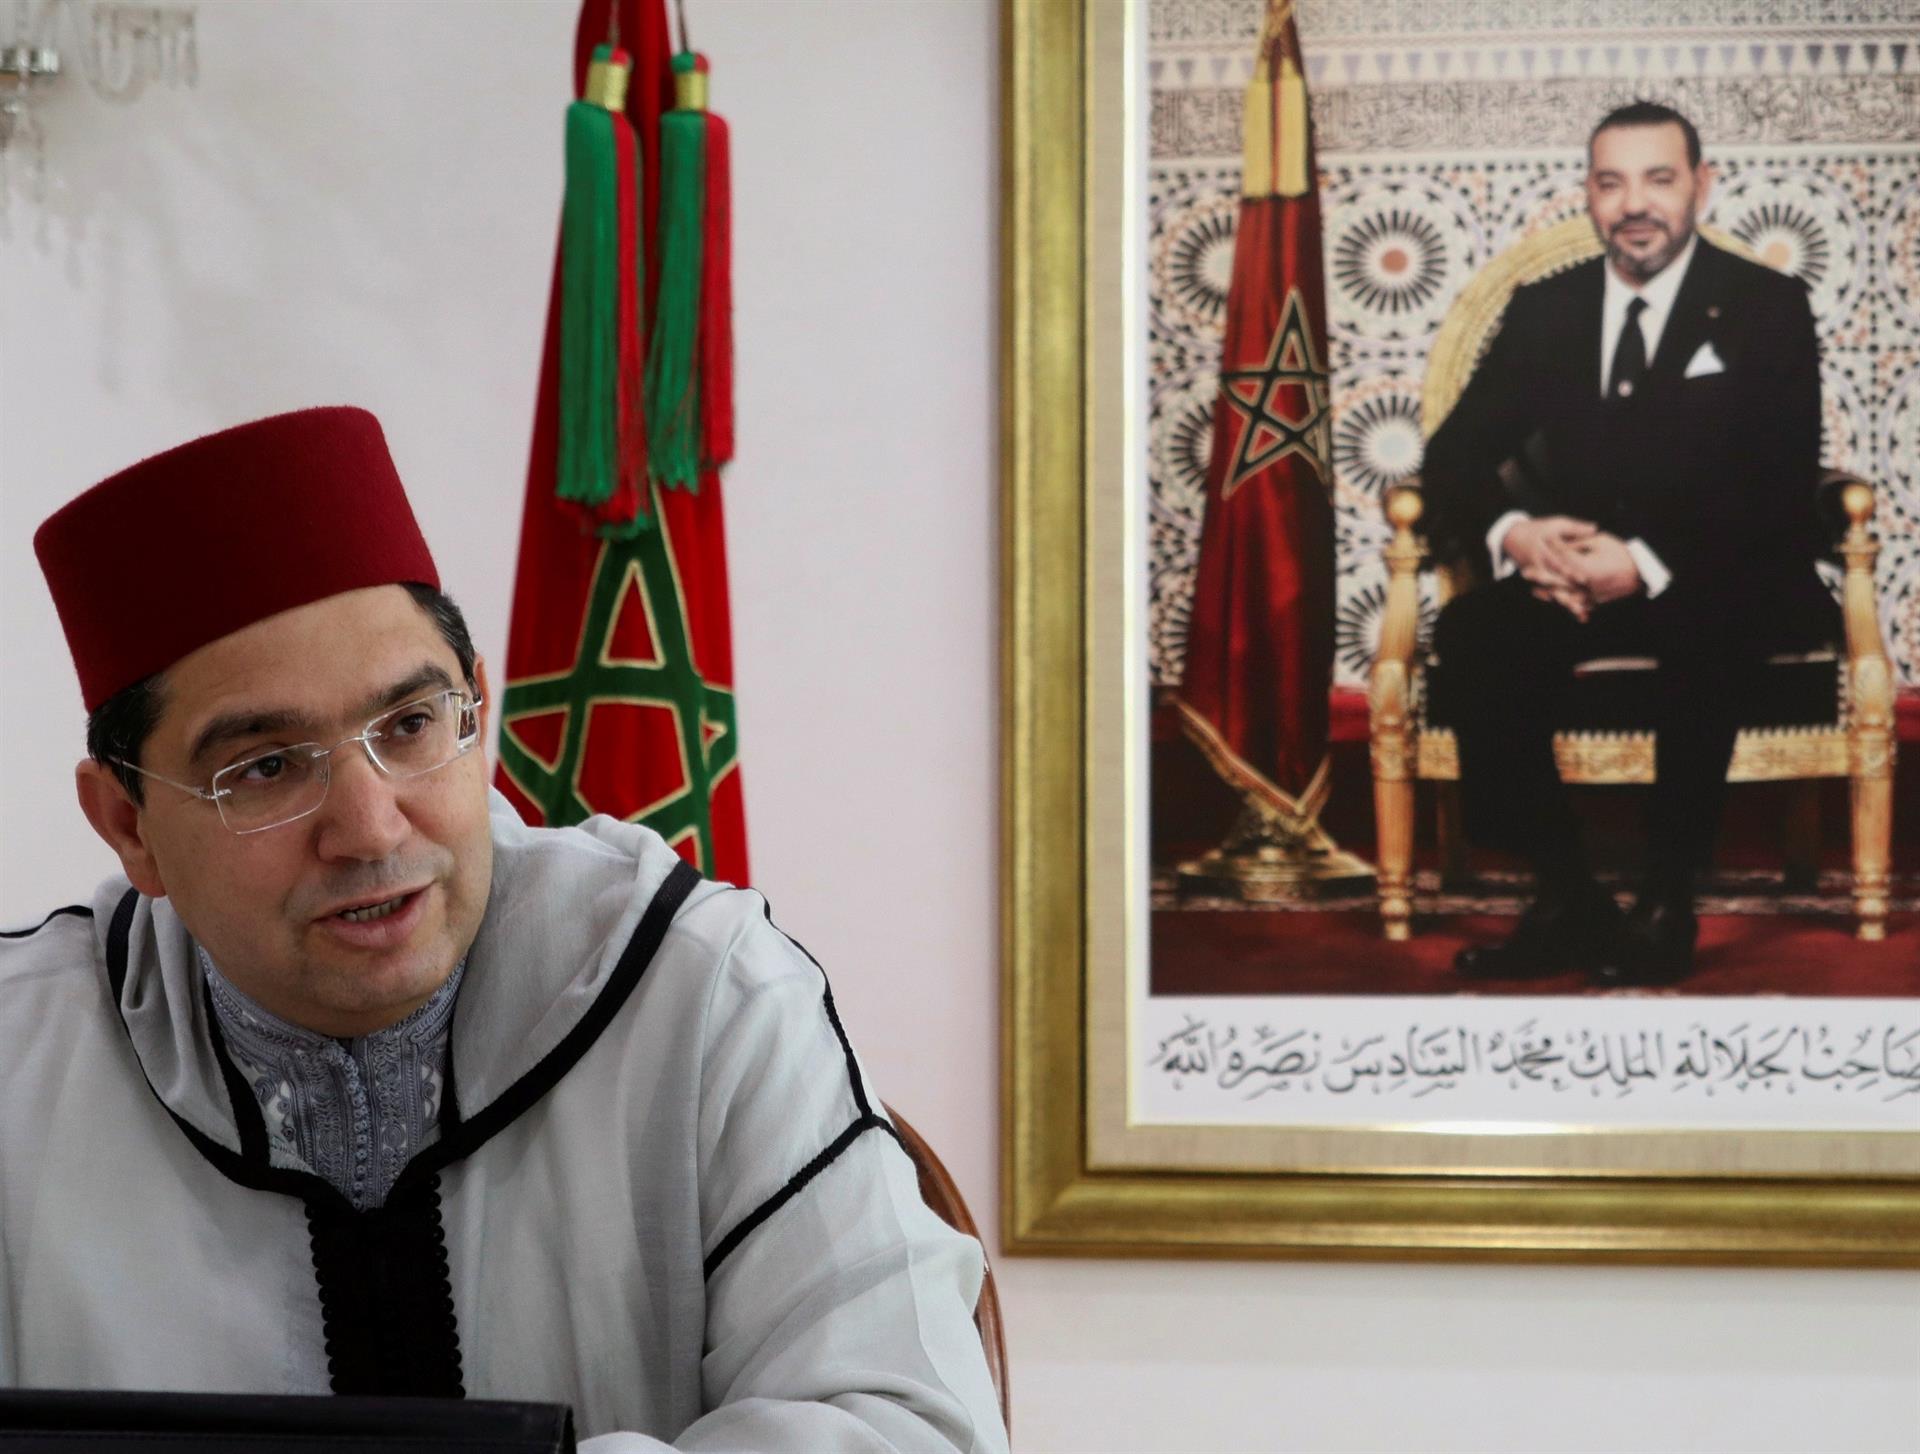 El Marroc colla Espanya: "Sacrificaran la nostra relació pel Polisario?"